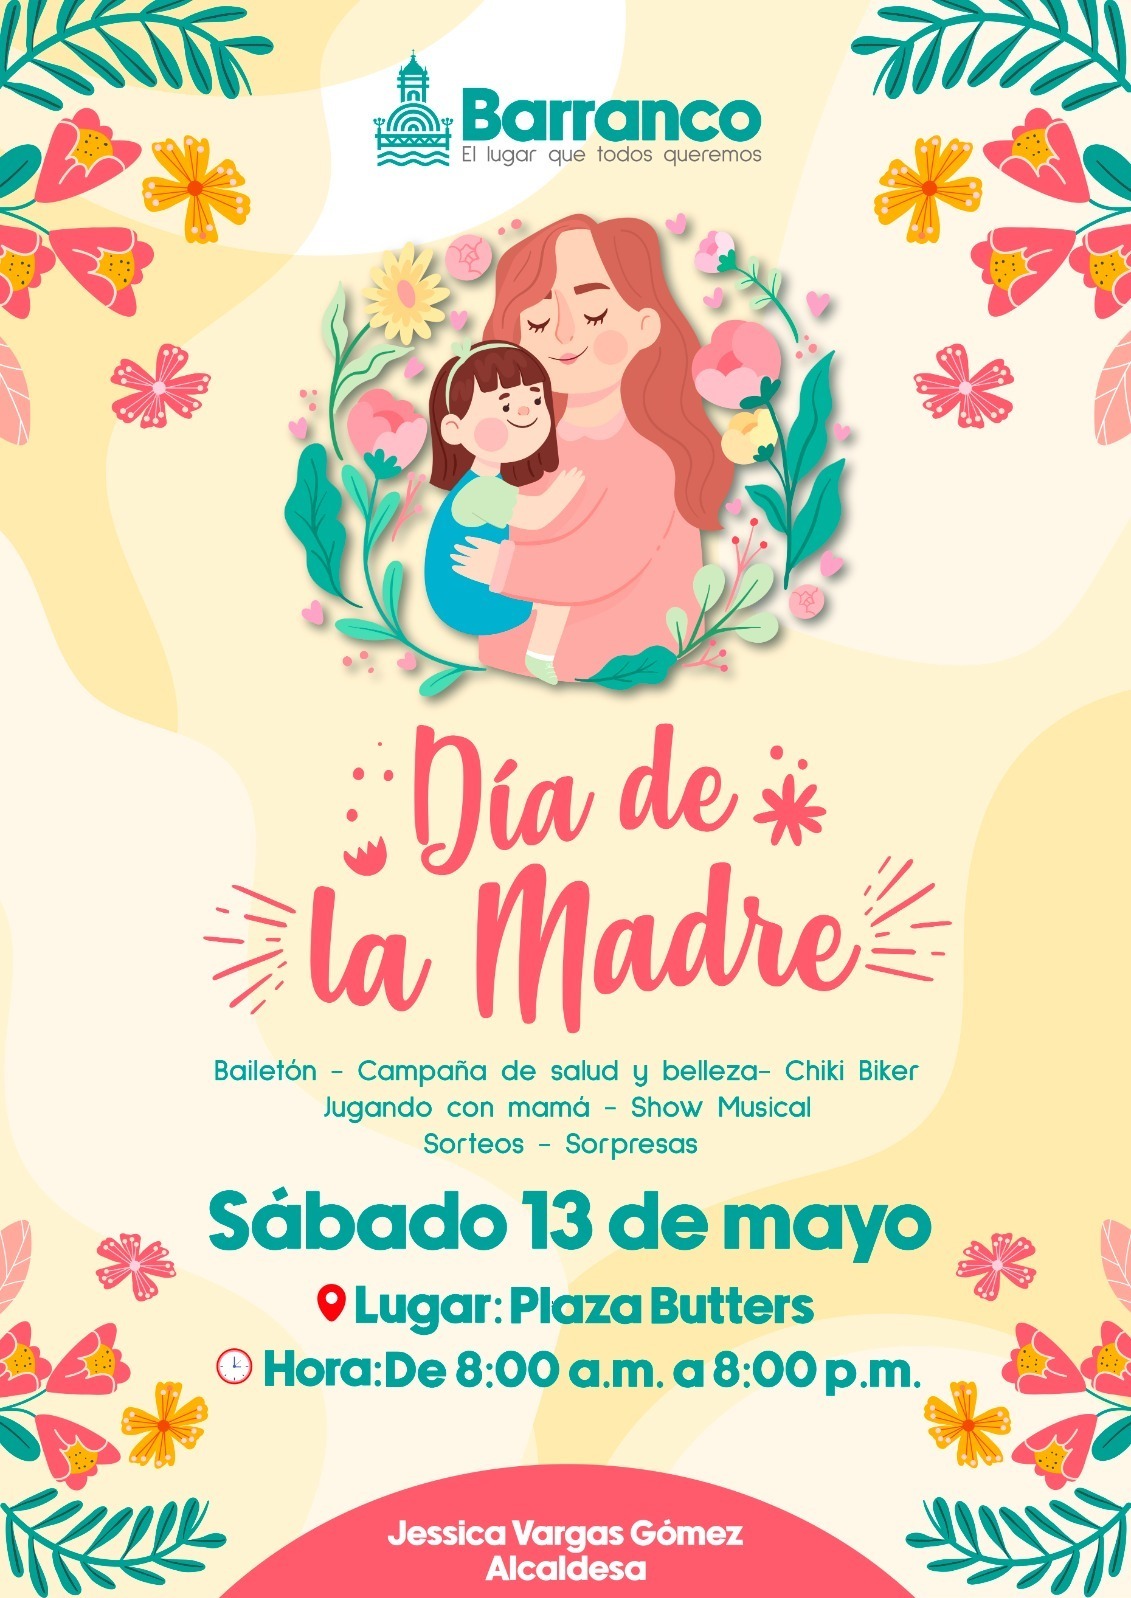 Día de la Madre: Municipalidad de Barranco organiza feria de salud, bailetón y concierto en vivo